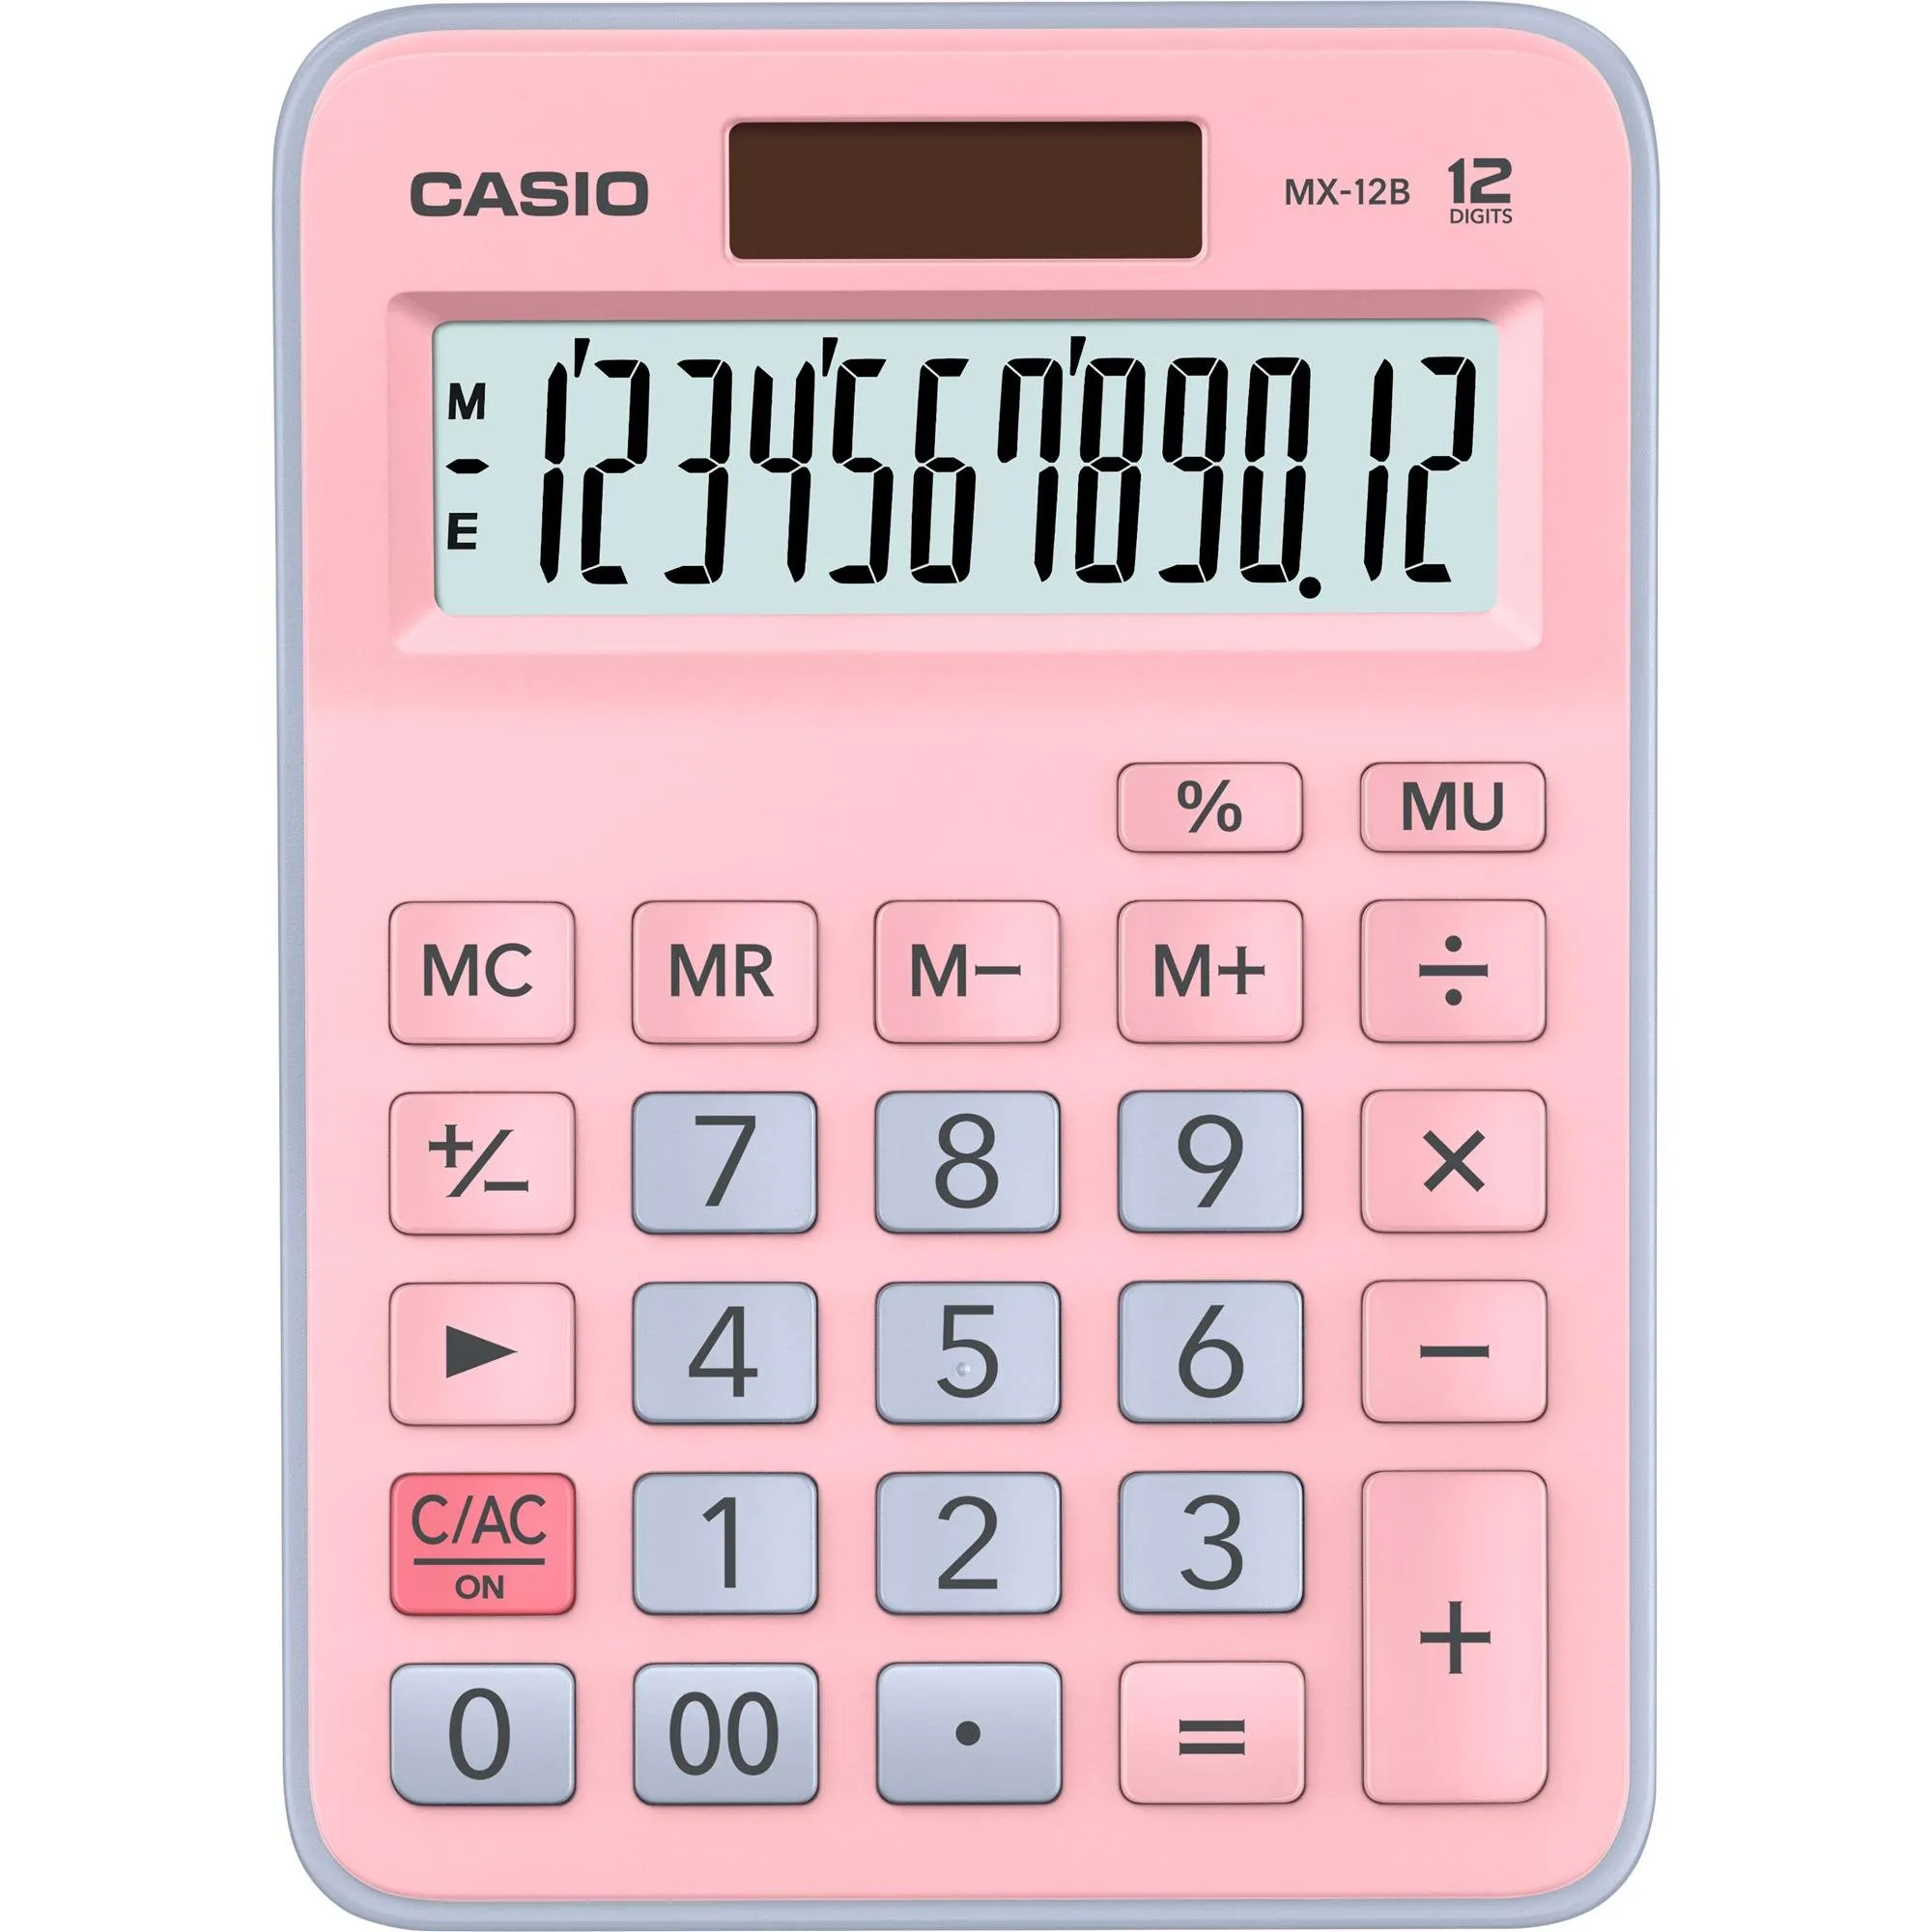 Calculadora de Mesa Casio MX-12B-PKLB 12 Dígitos Rosa/Azul Claro por 53,99 à vista no boleto/pix ou parcele em até 2x sem juros. Compre na loja Mundomax!